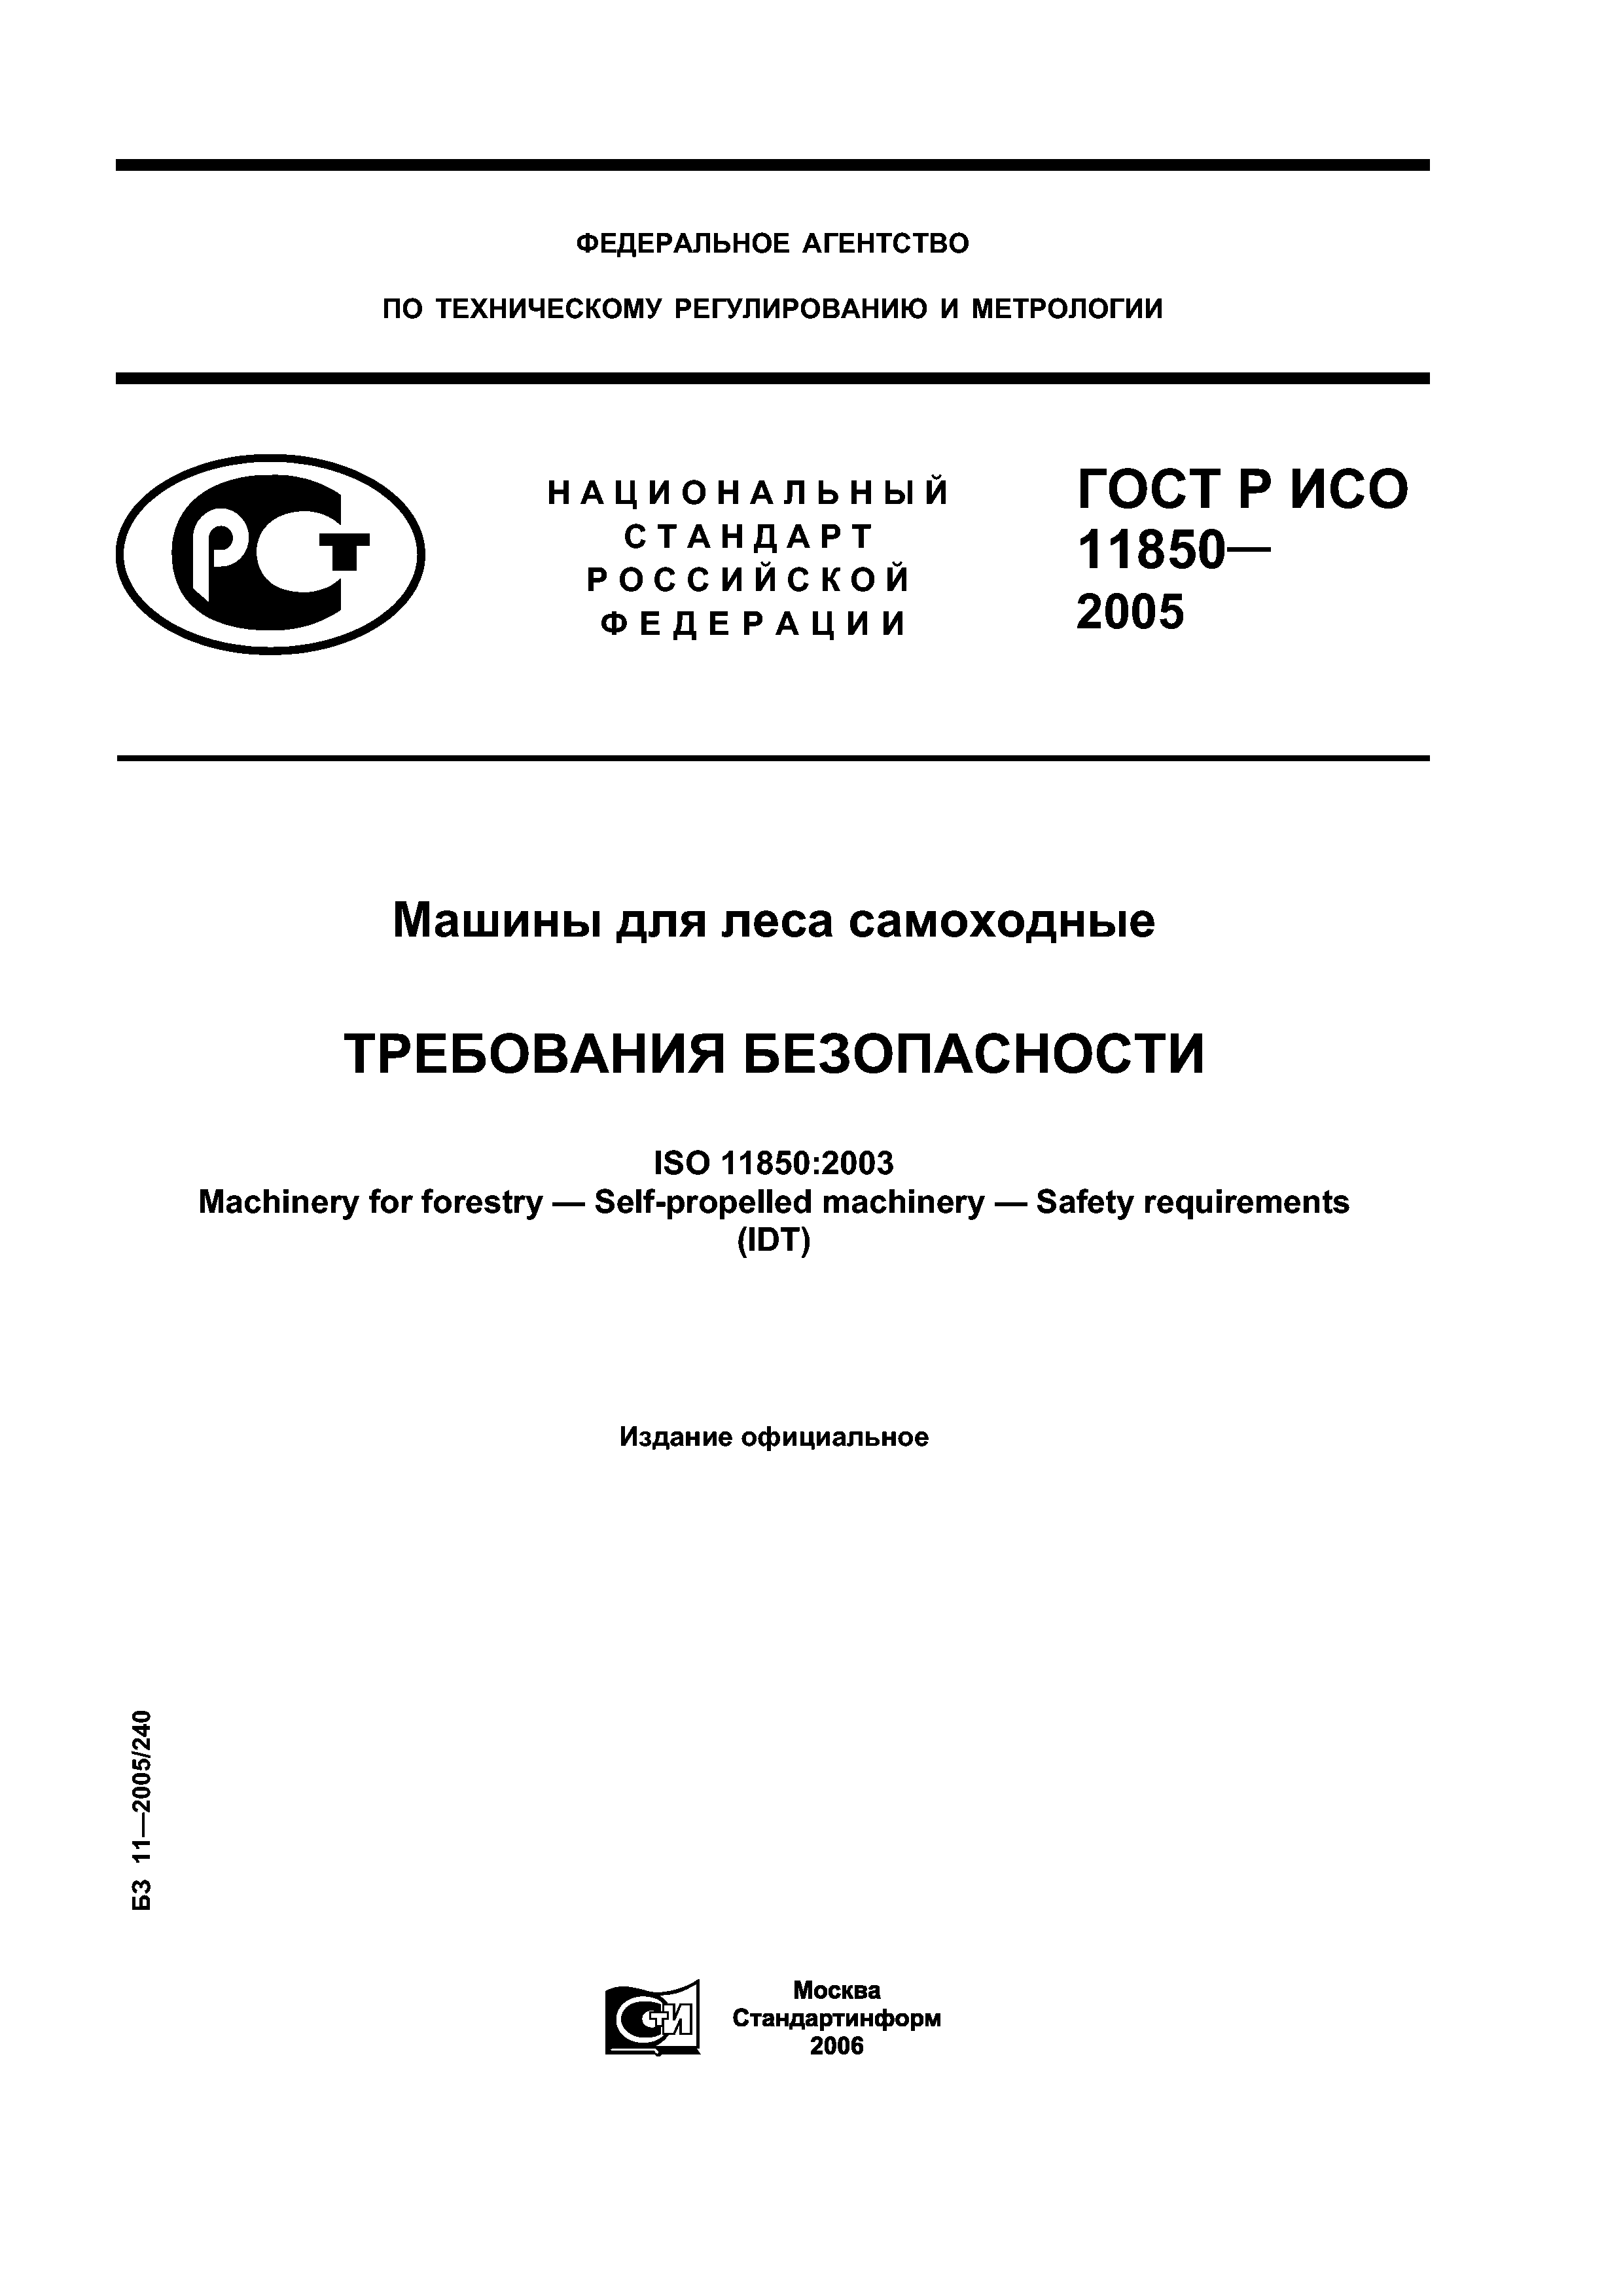 ГОСТ Р ИСО 11850-2005